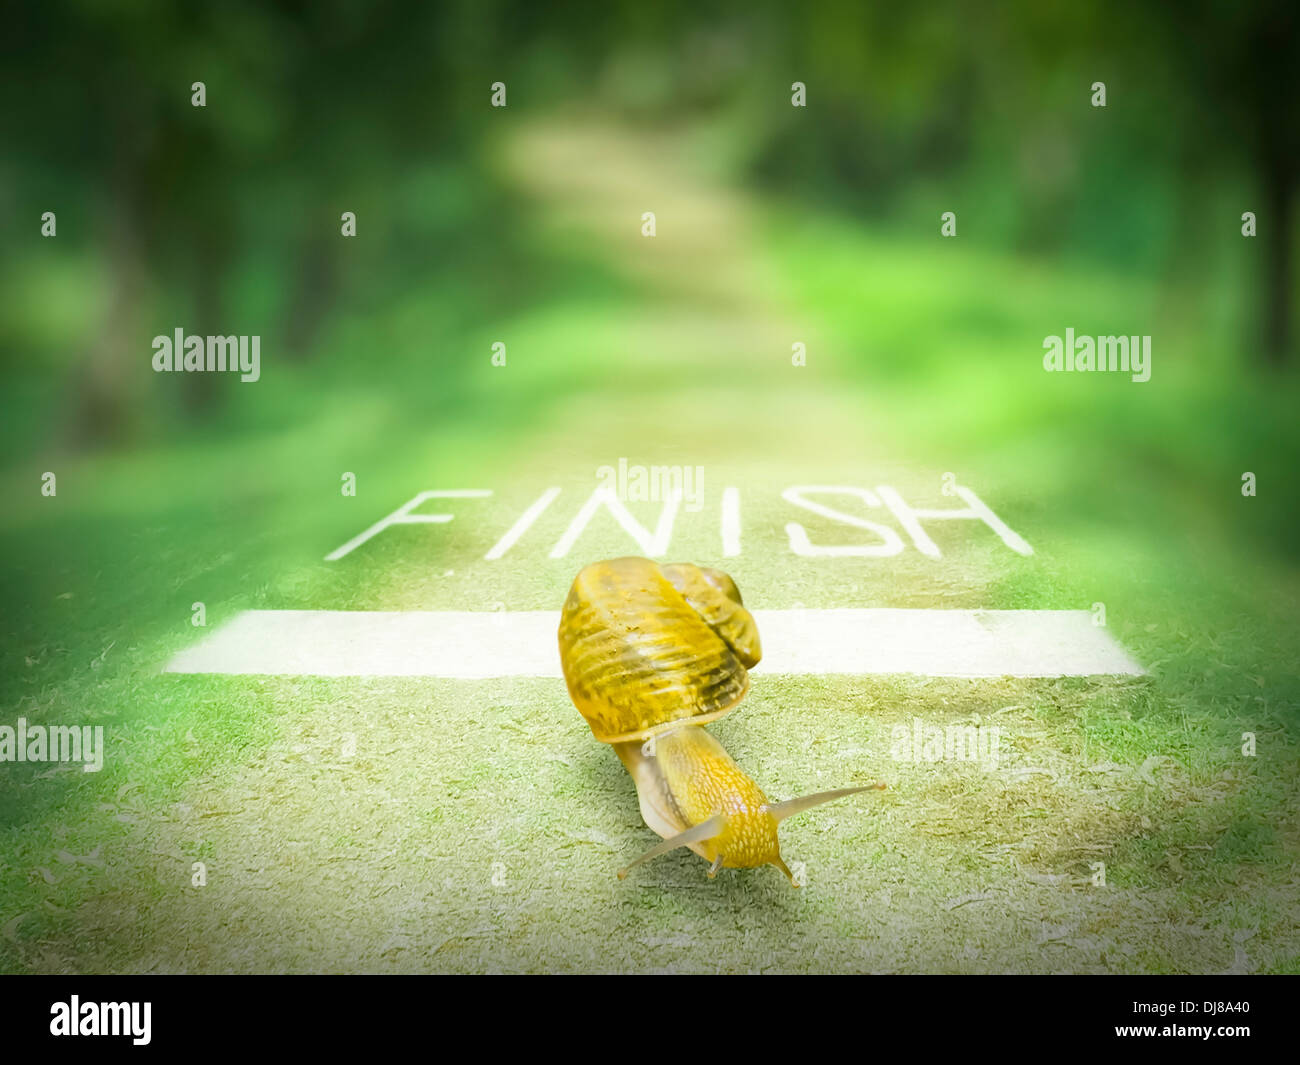 Snail andando oltre la linea del traguardo, Concept Foto Stock